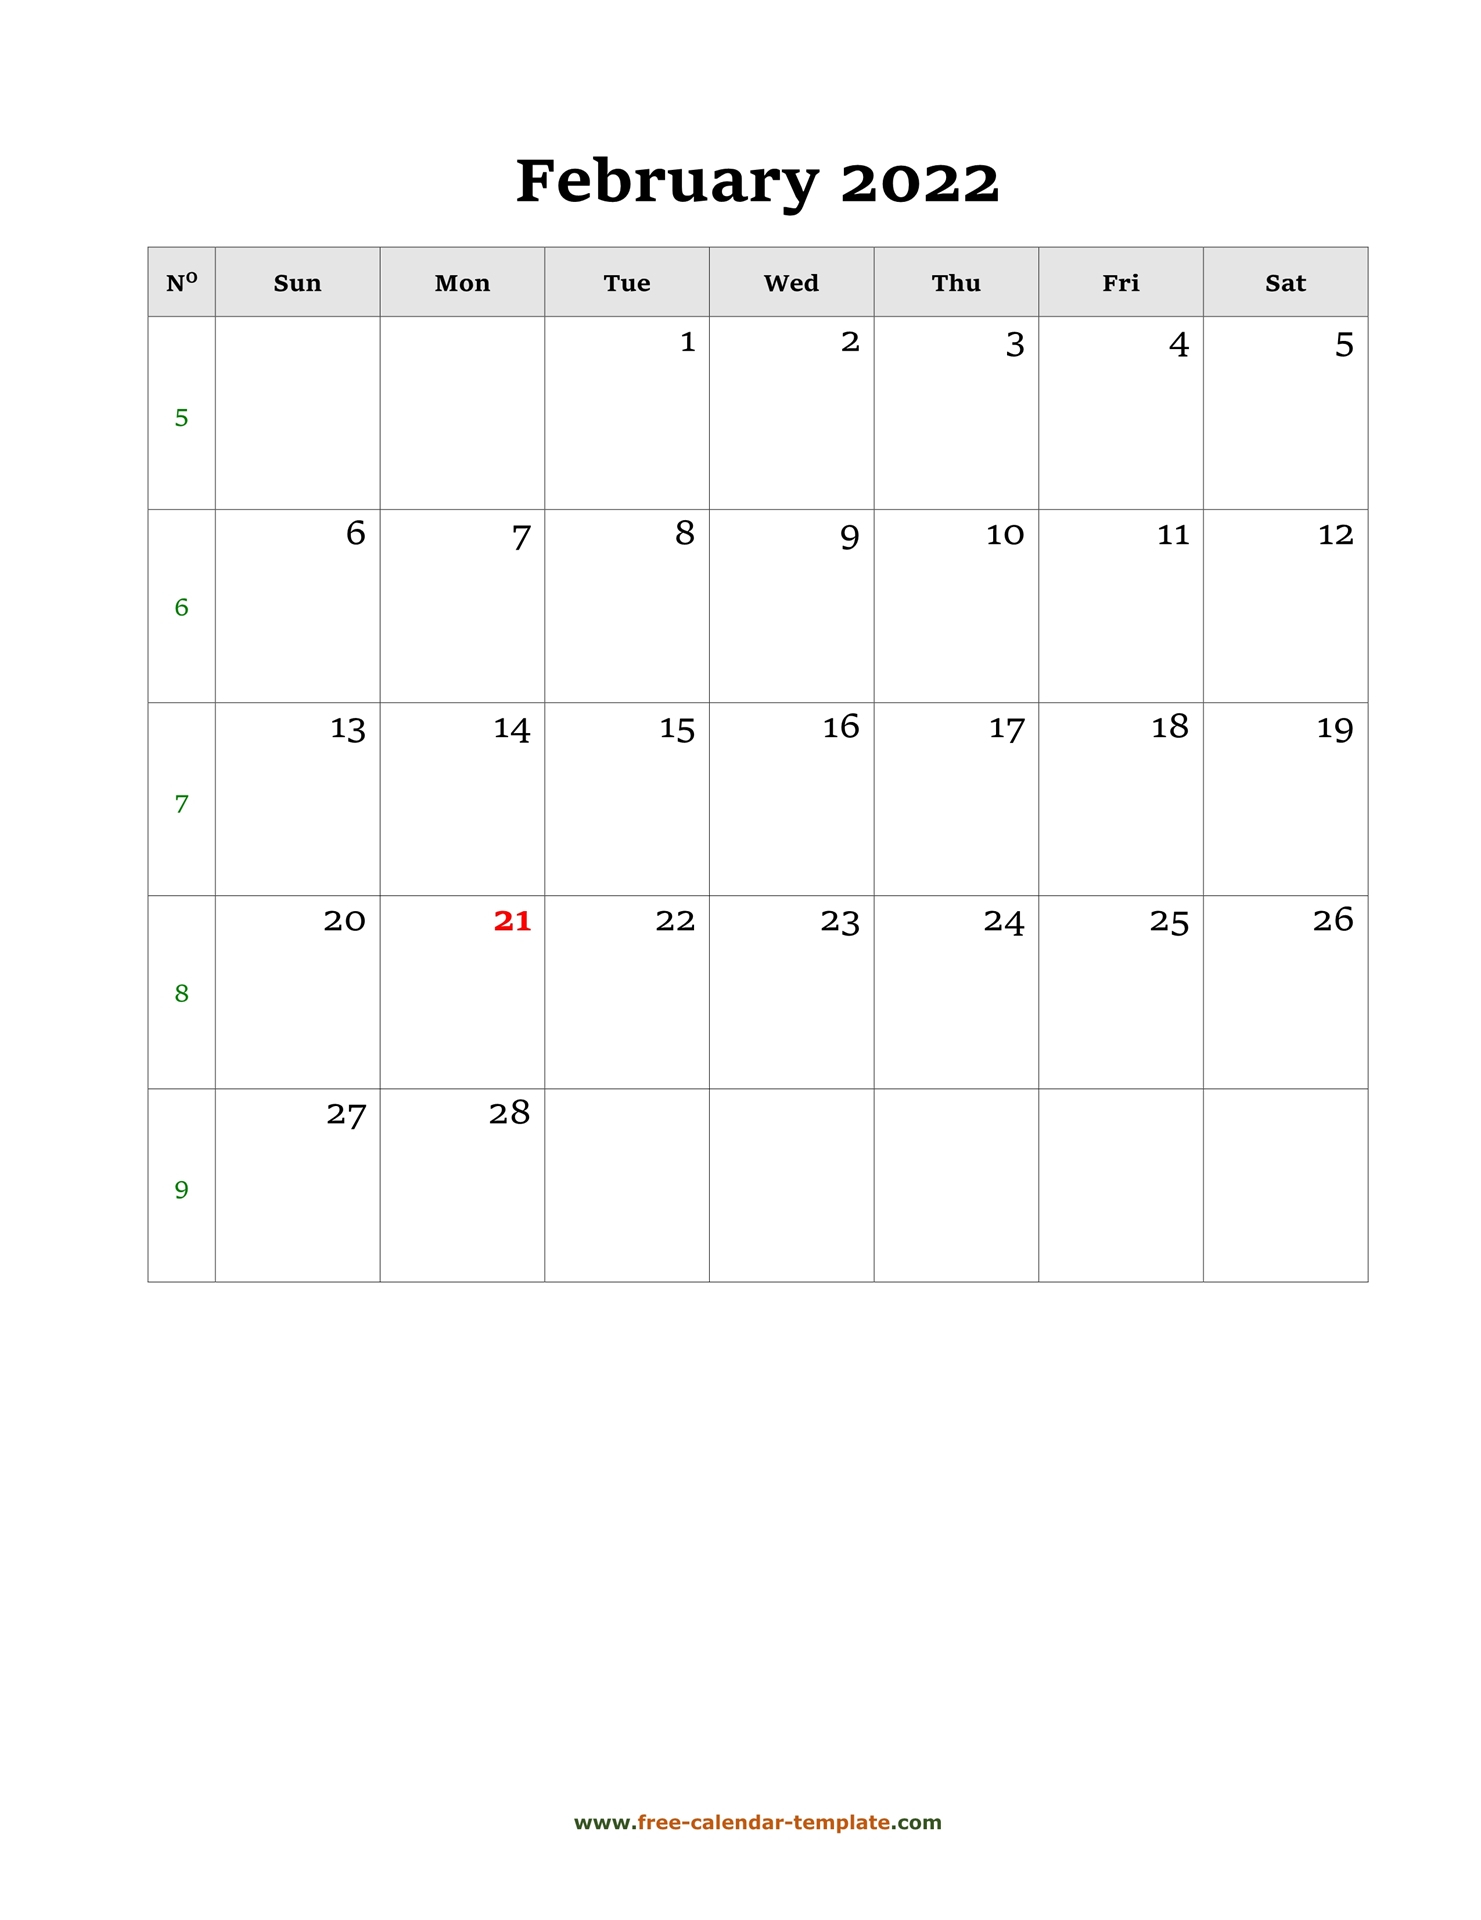 Take Kohinoor Calendar 2022 February